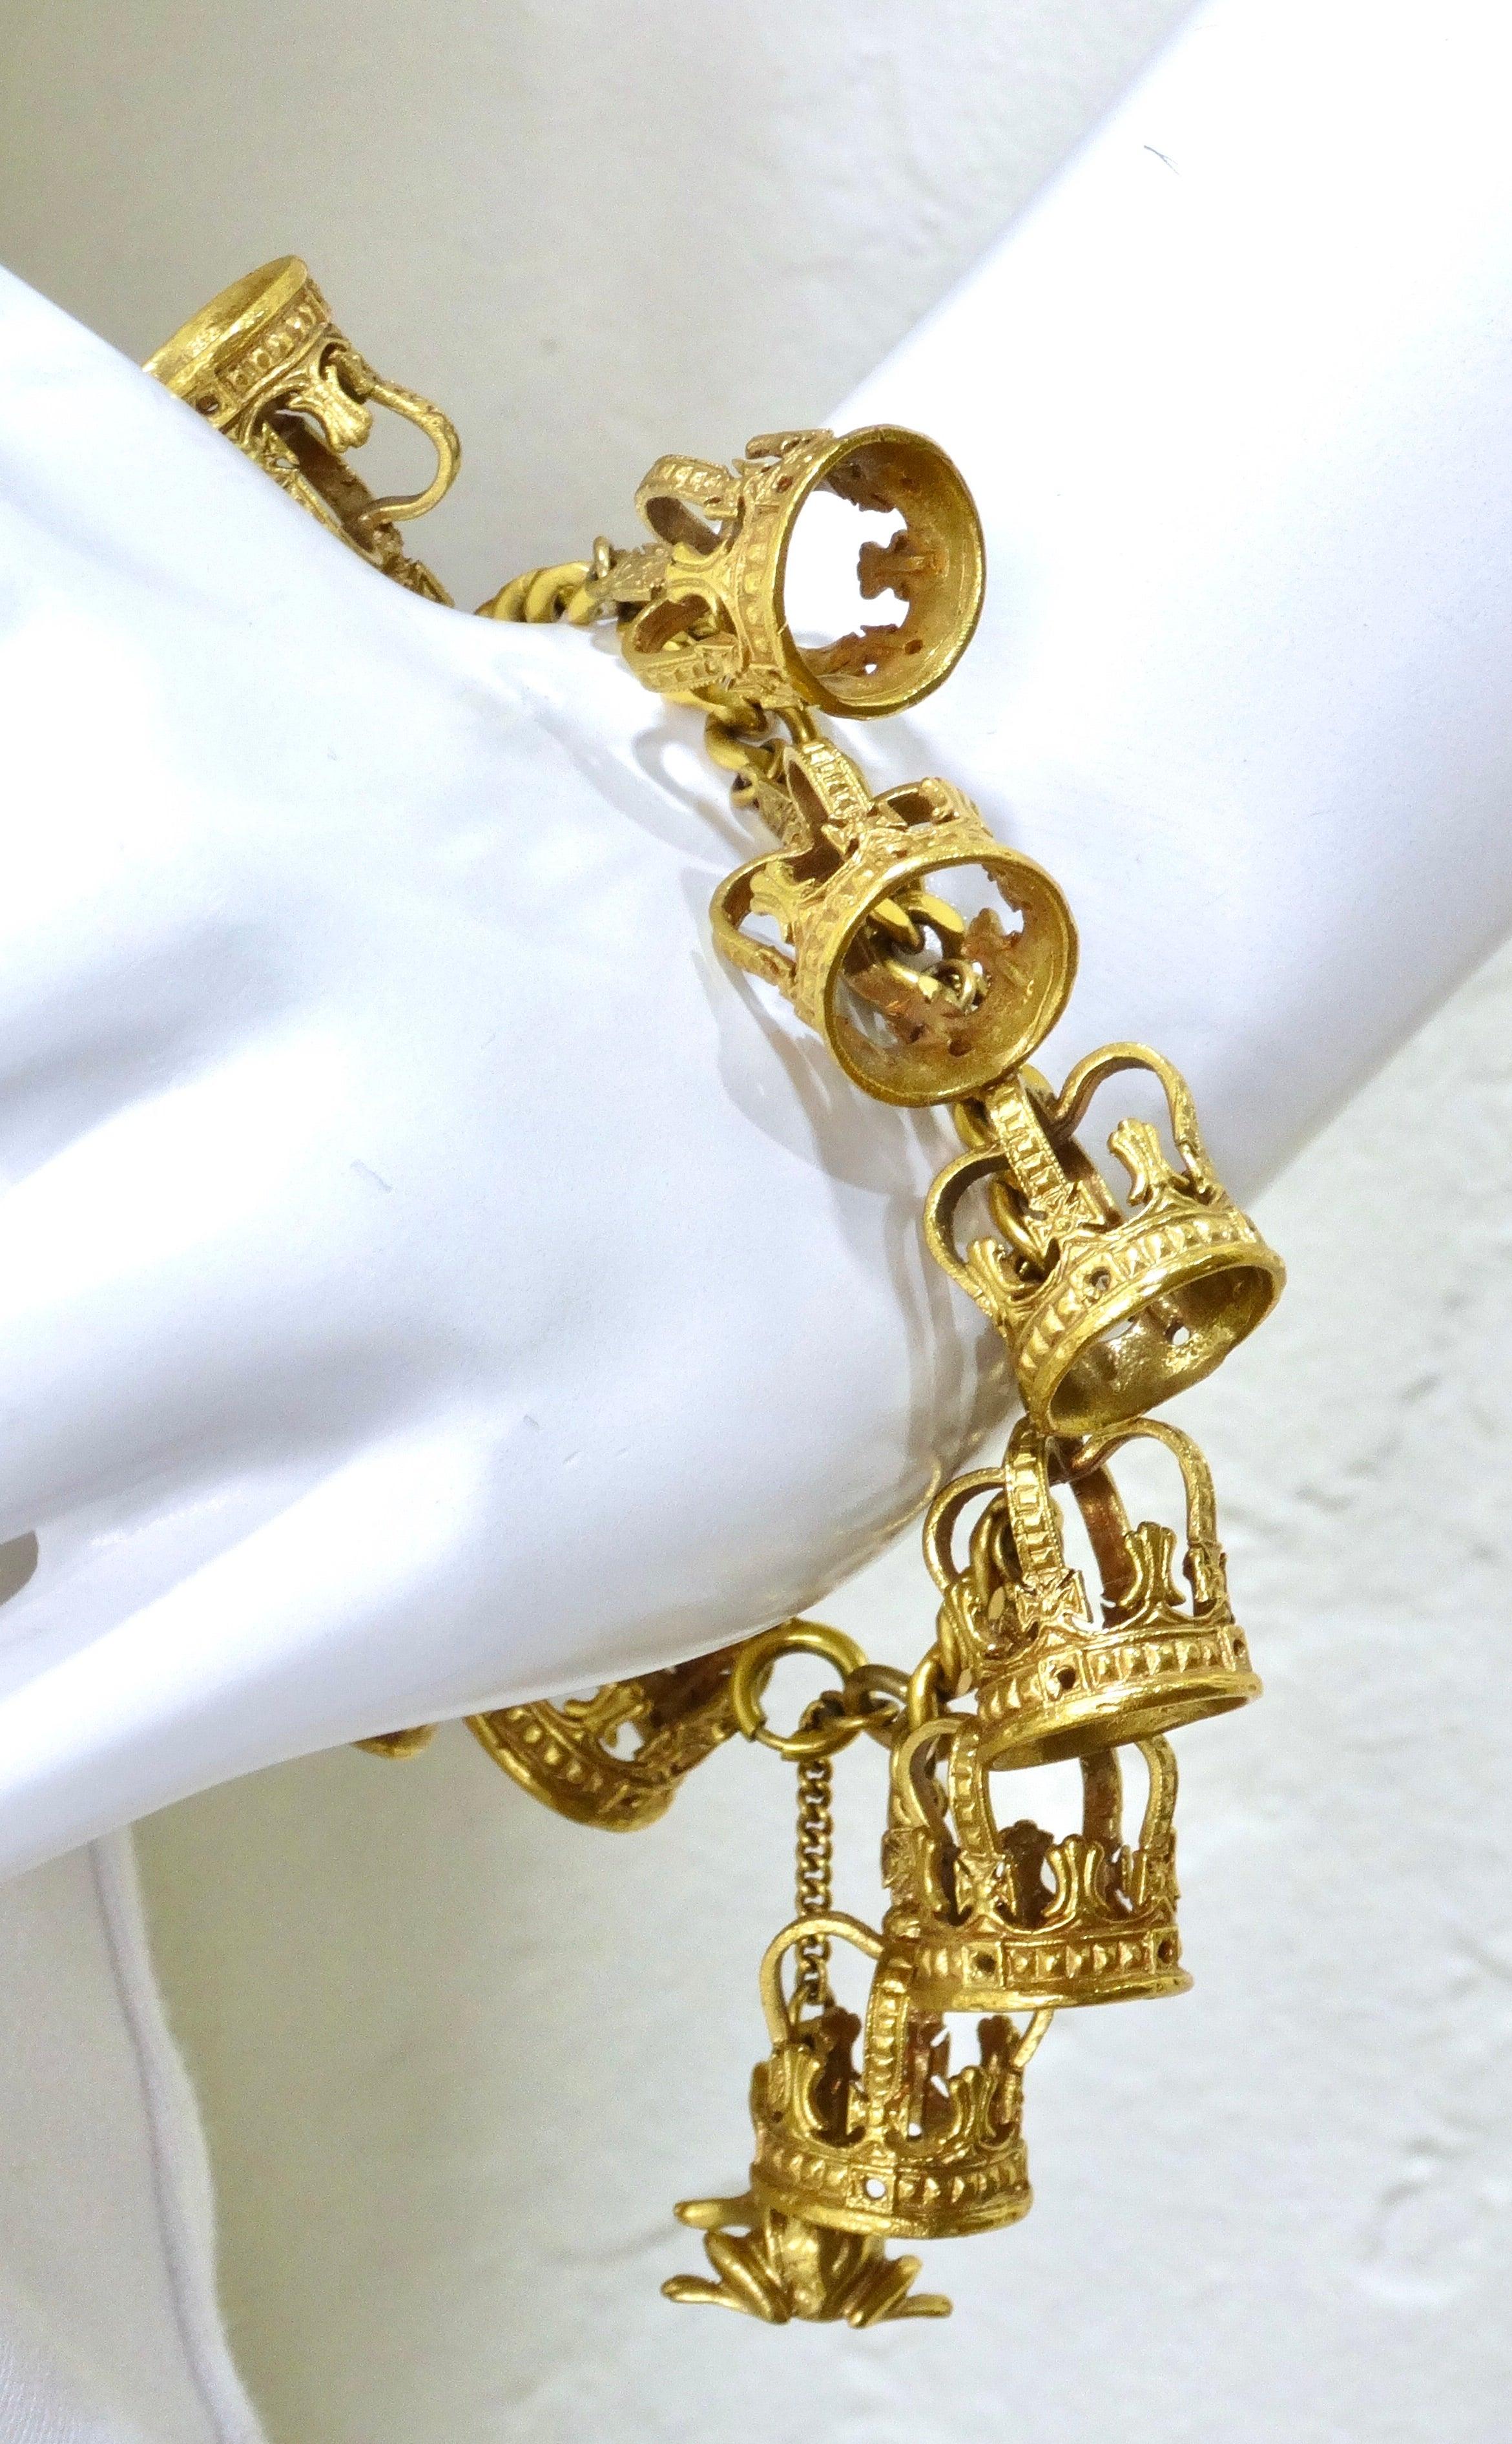 Women's or Men's Vintage Charm Bracelet Gold Crowns & Frog Prince